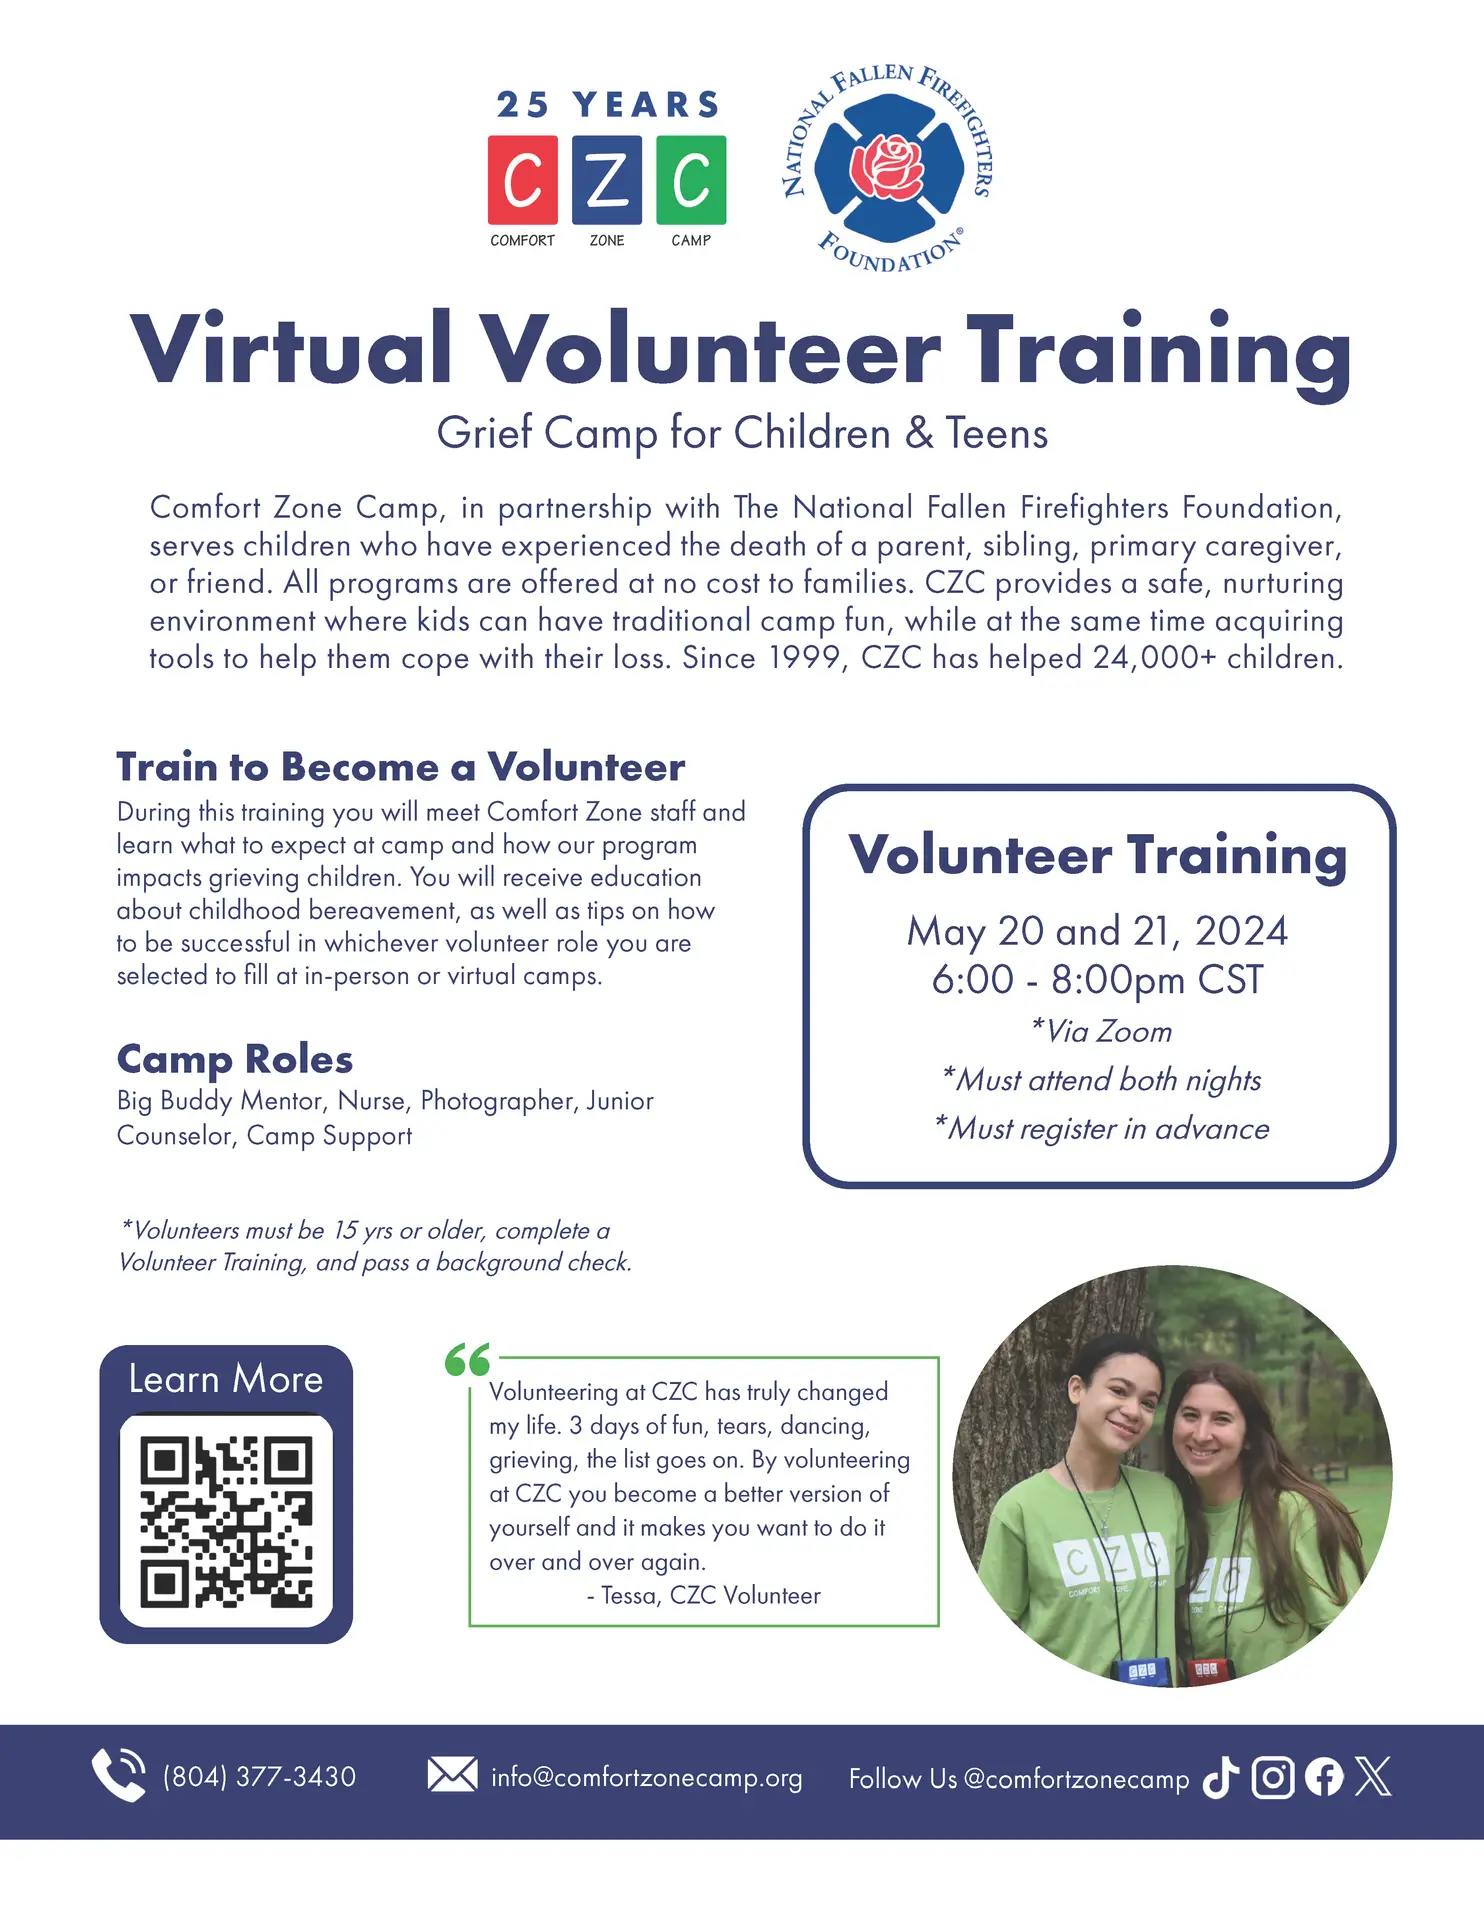 CZC Volunteer Training 2024